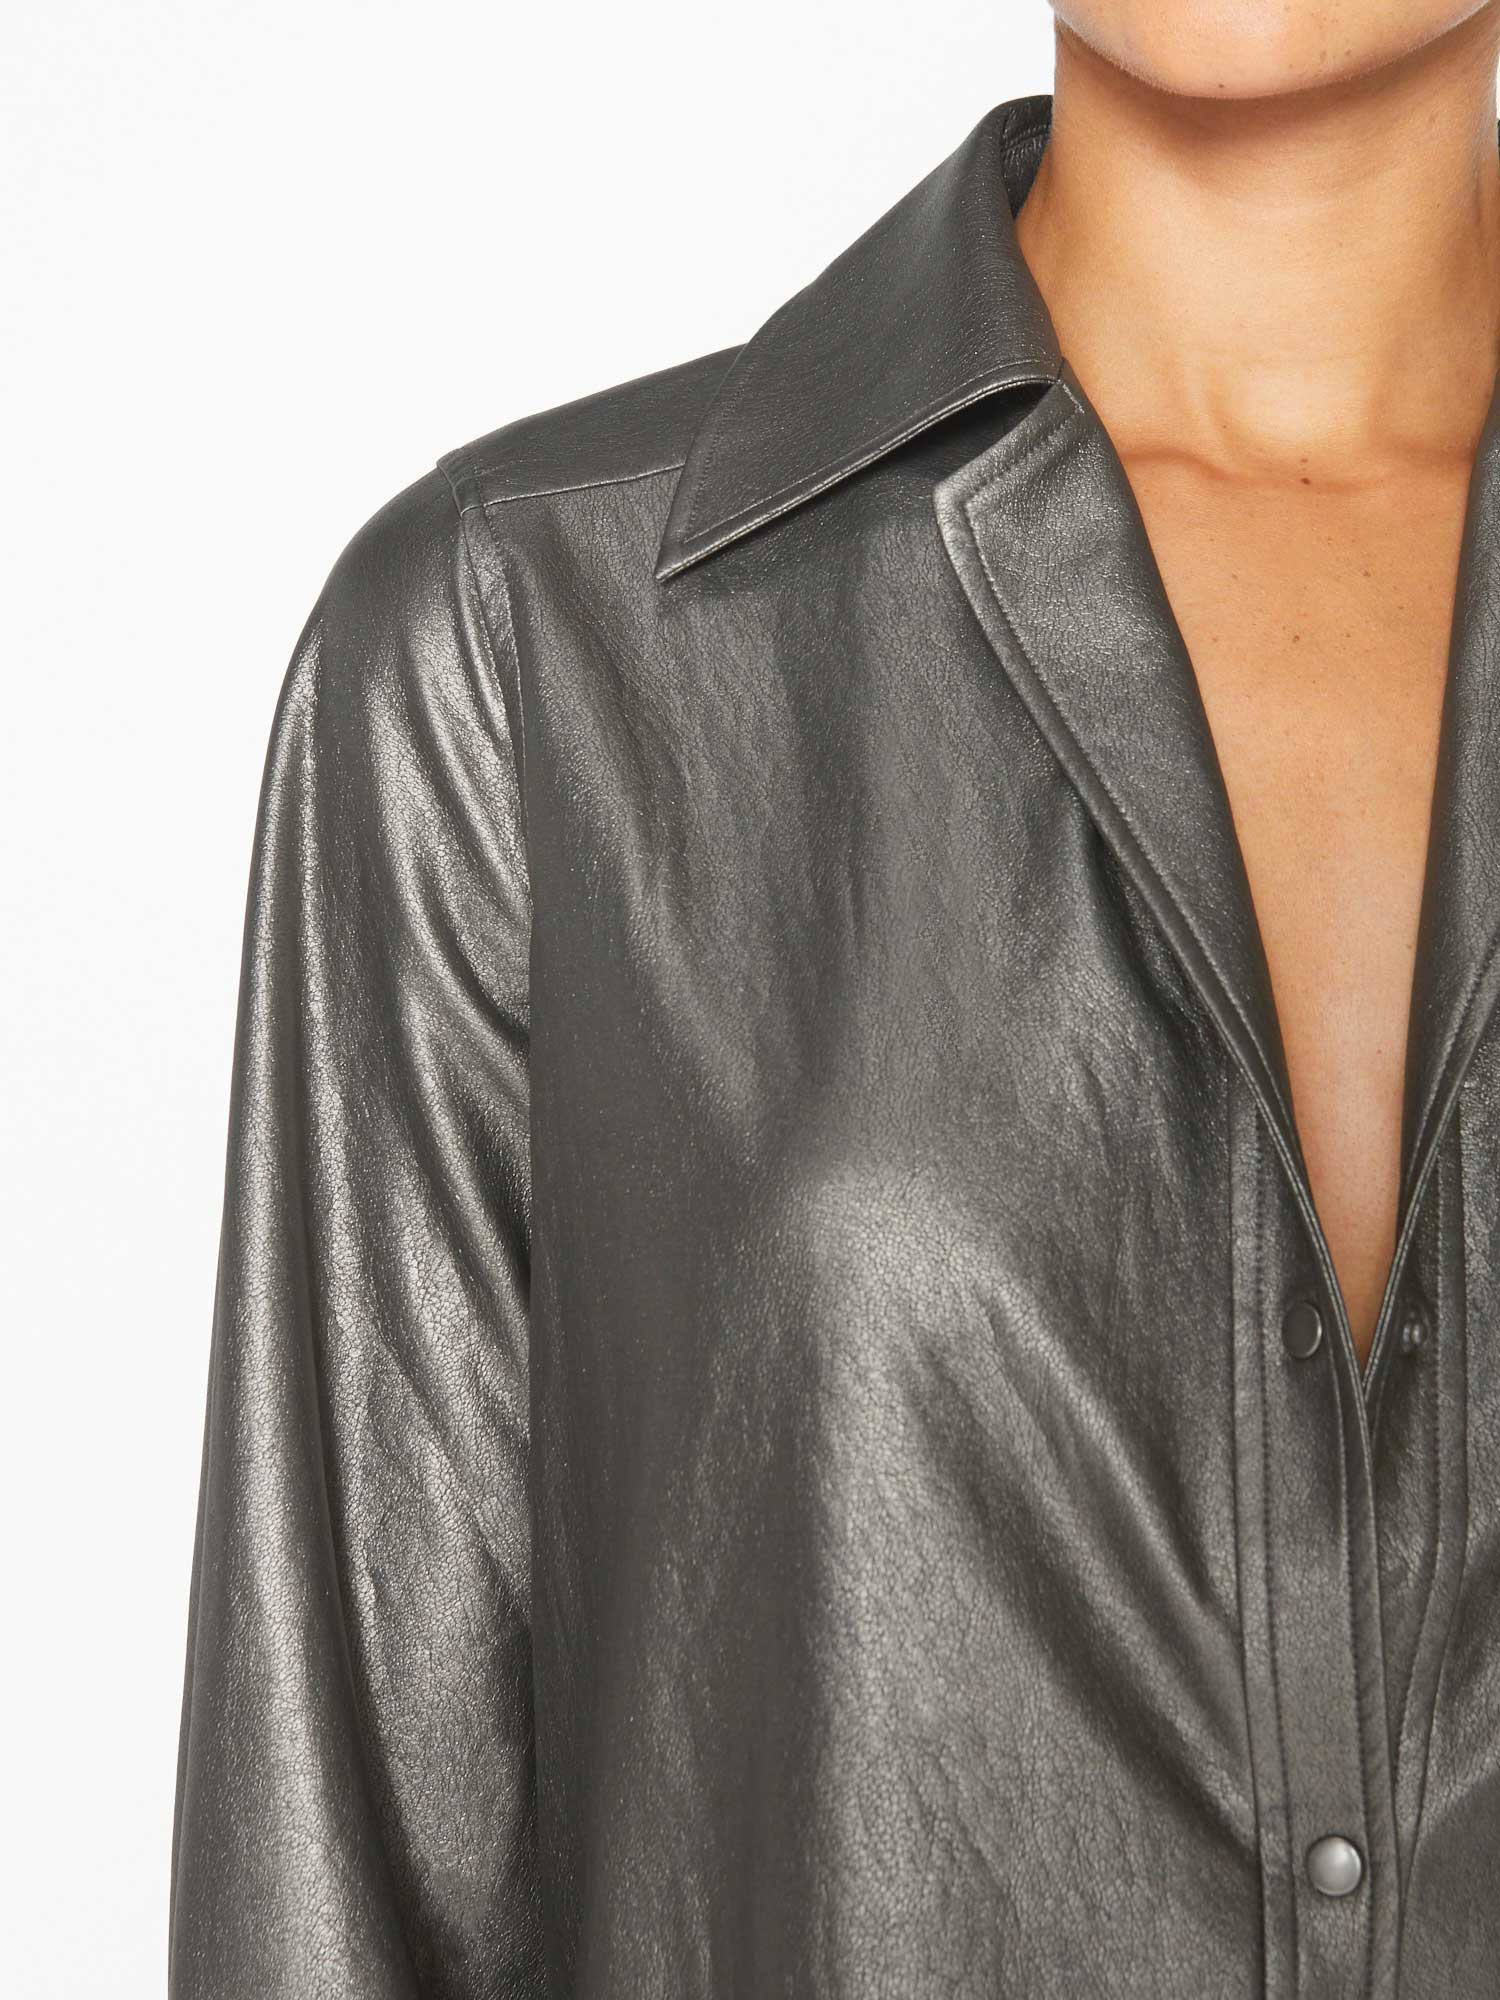 Layra shiny metallic grey vegan leather buttondown shirt close up